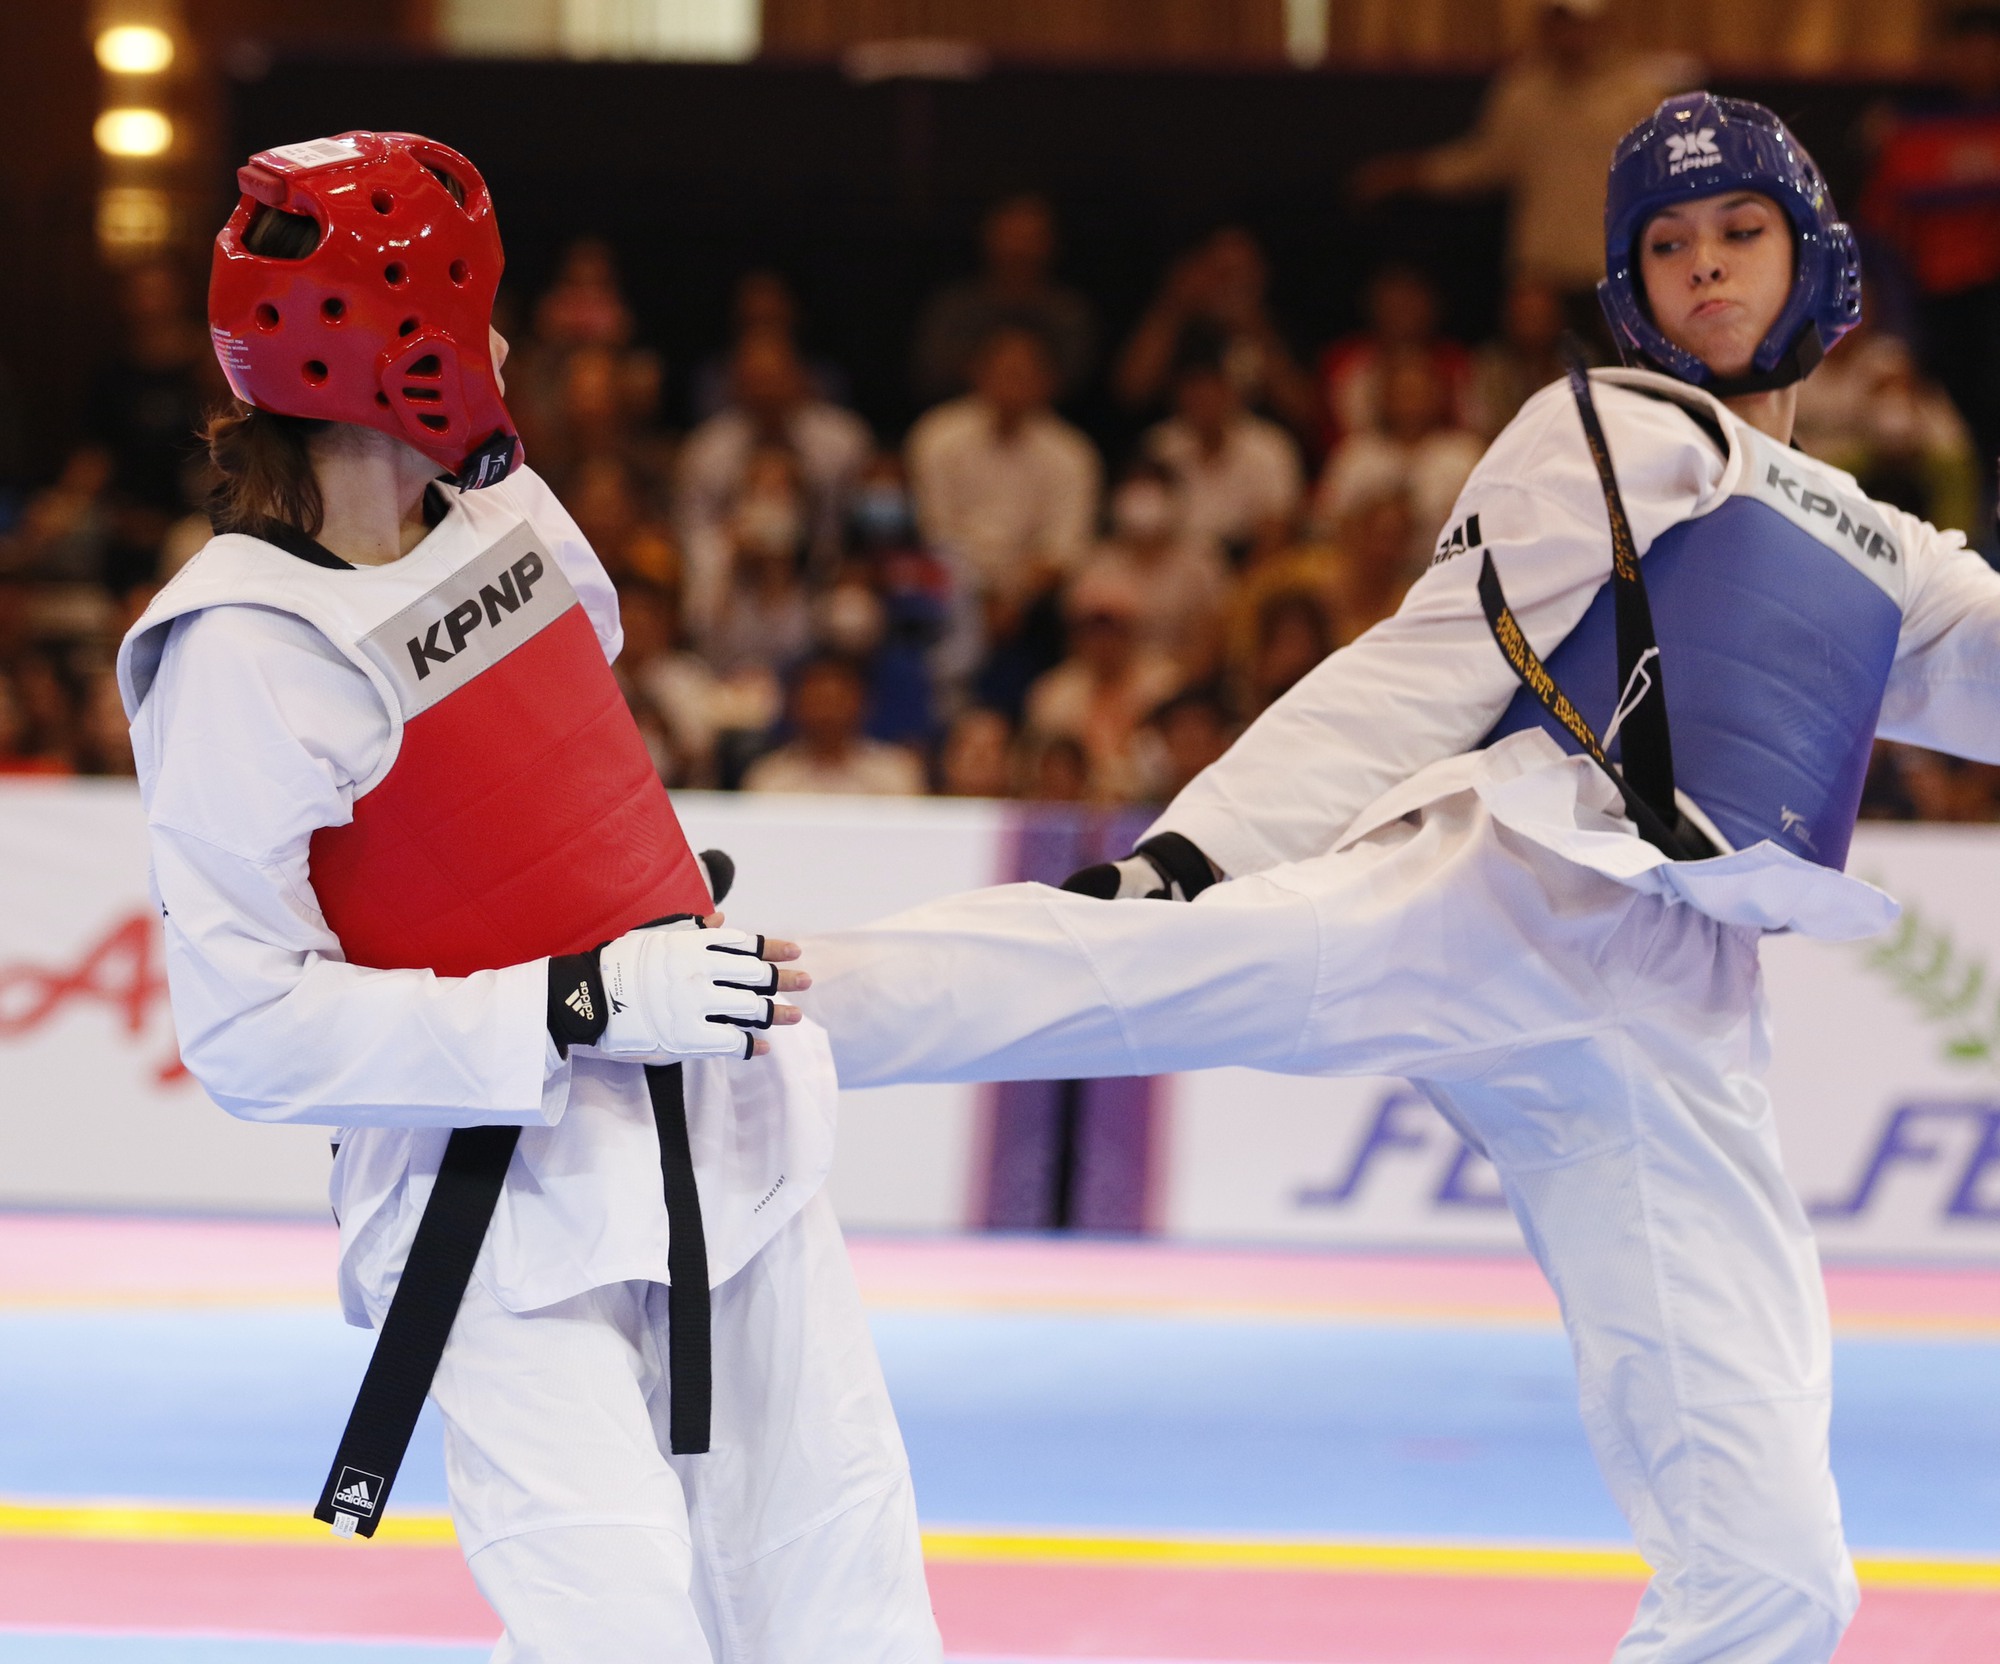 Người Campuchia vỡ òa niềm vui với chiến thắng của nữ võ sĩ taekwondo gốc Mỹ  - Ảnh 4.